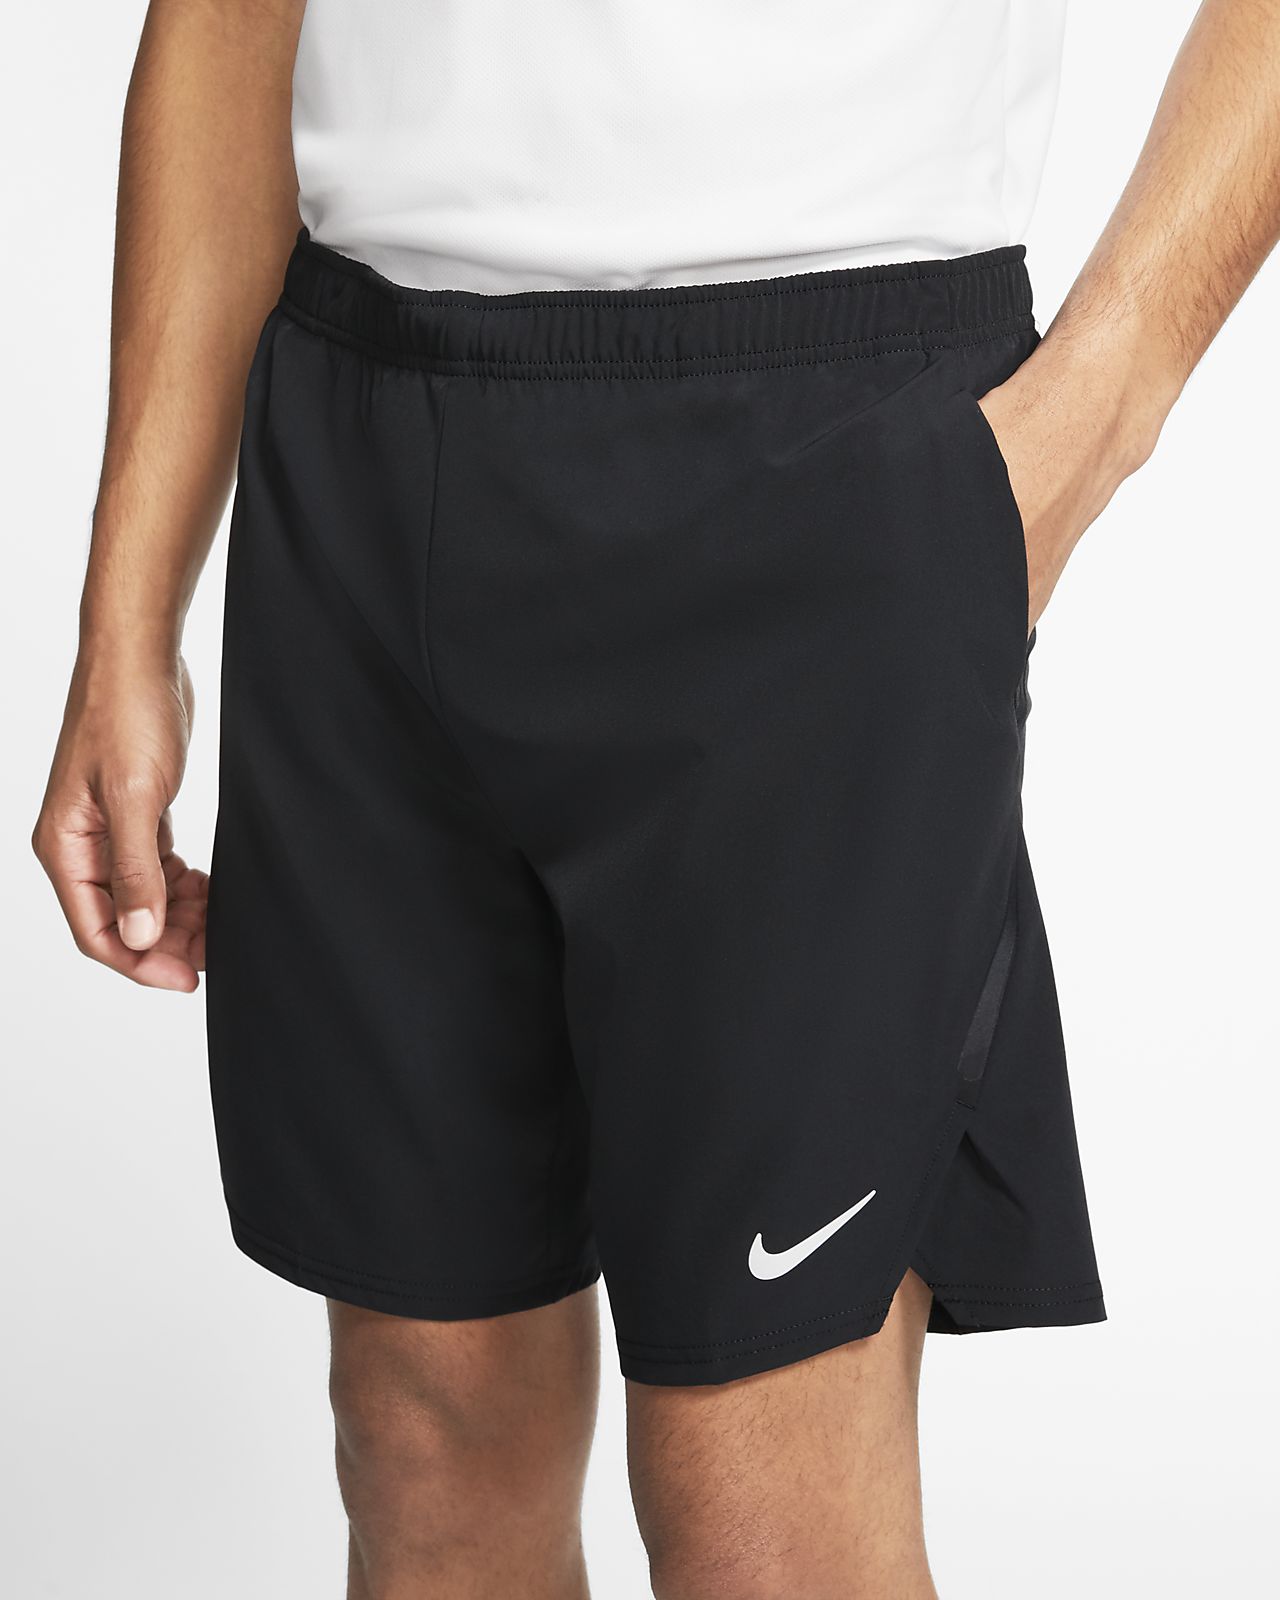 Шорты training. Шорты мужские Nike Flex. Шорты мужские Nike Court Dri-Fit. NIKECOURT Ace 23. Теннисные шорты найк мужские.